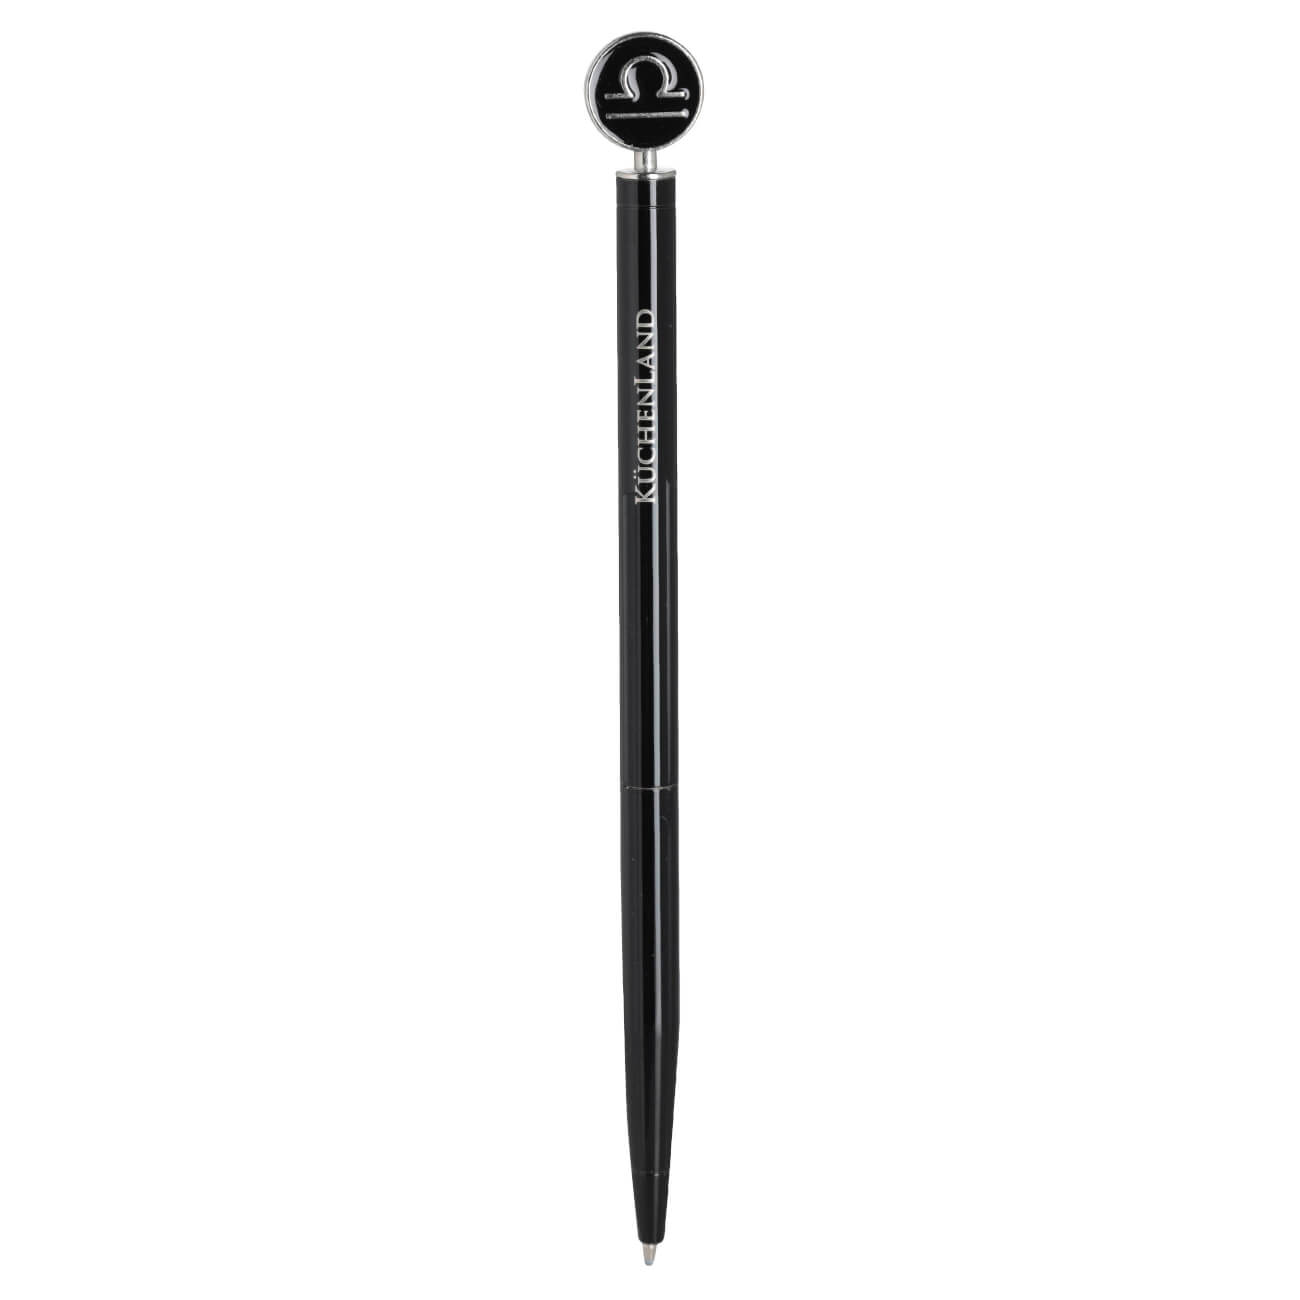 Ручка шариковая, 15 см, с фигуркой, сталь, черно-серебристая, Весы, Zodiac brass rollerball ручка